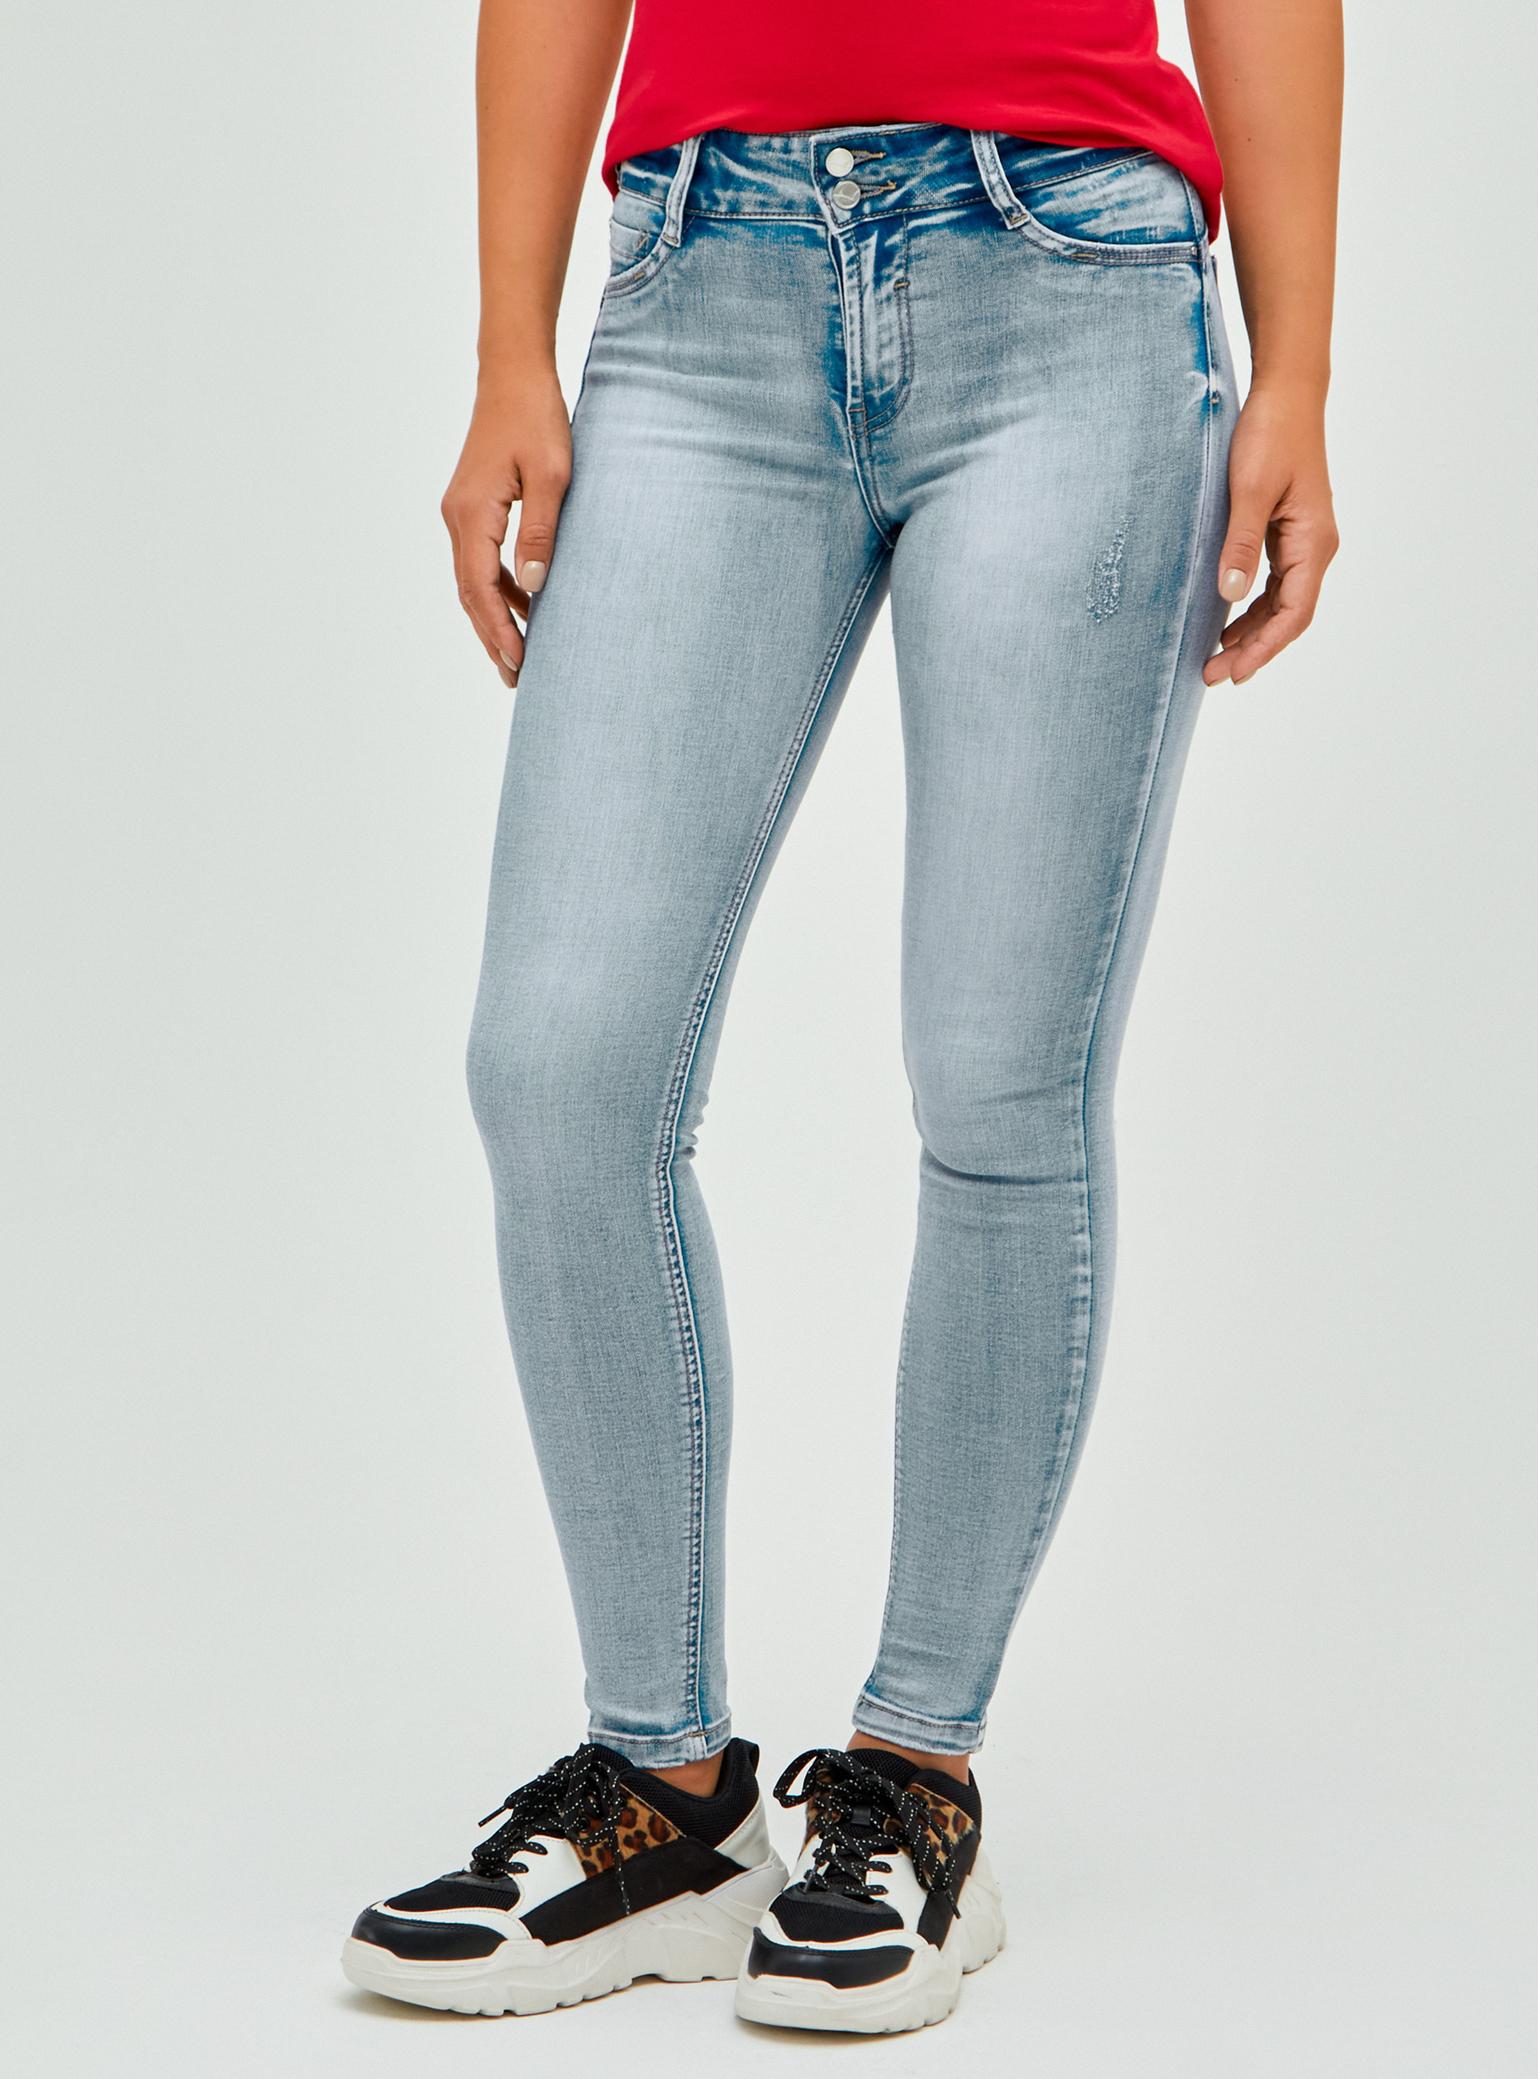 Oferta de Jeans Push Up Skinny por $10490 en Paris